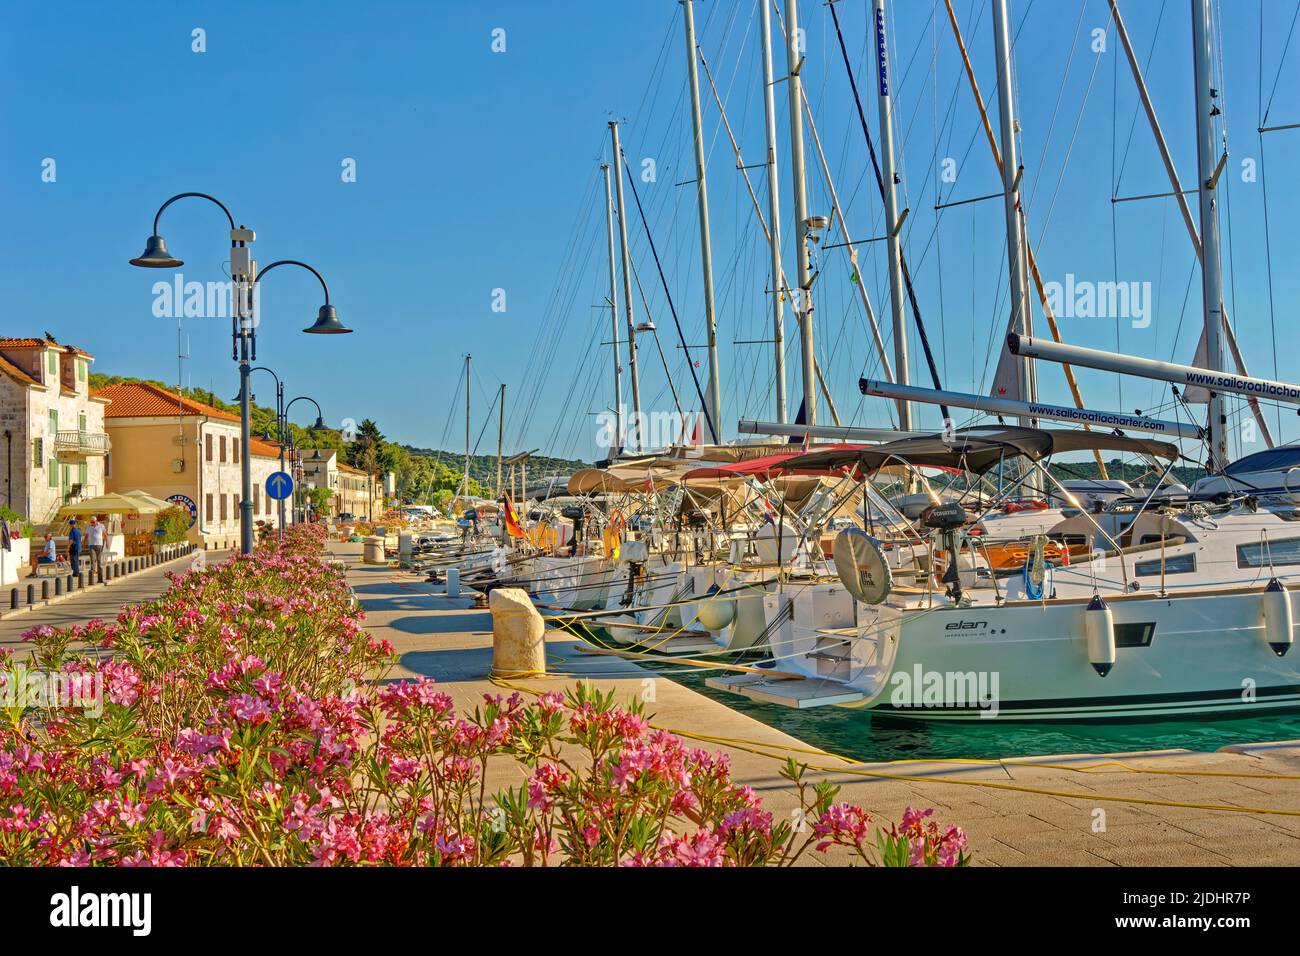 Molo della città di Rogoznica. Una popolare destinazione di pernottamento per gli yacht Cruisers sulla costa centrale della Dalamation in Croazia. Foto Stock